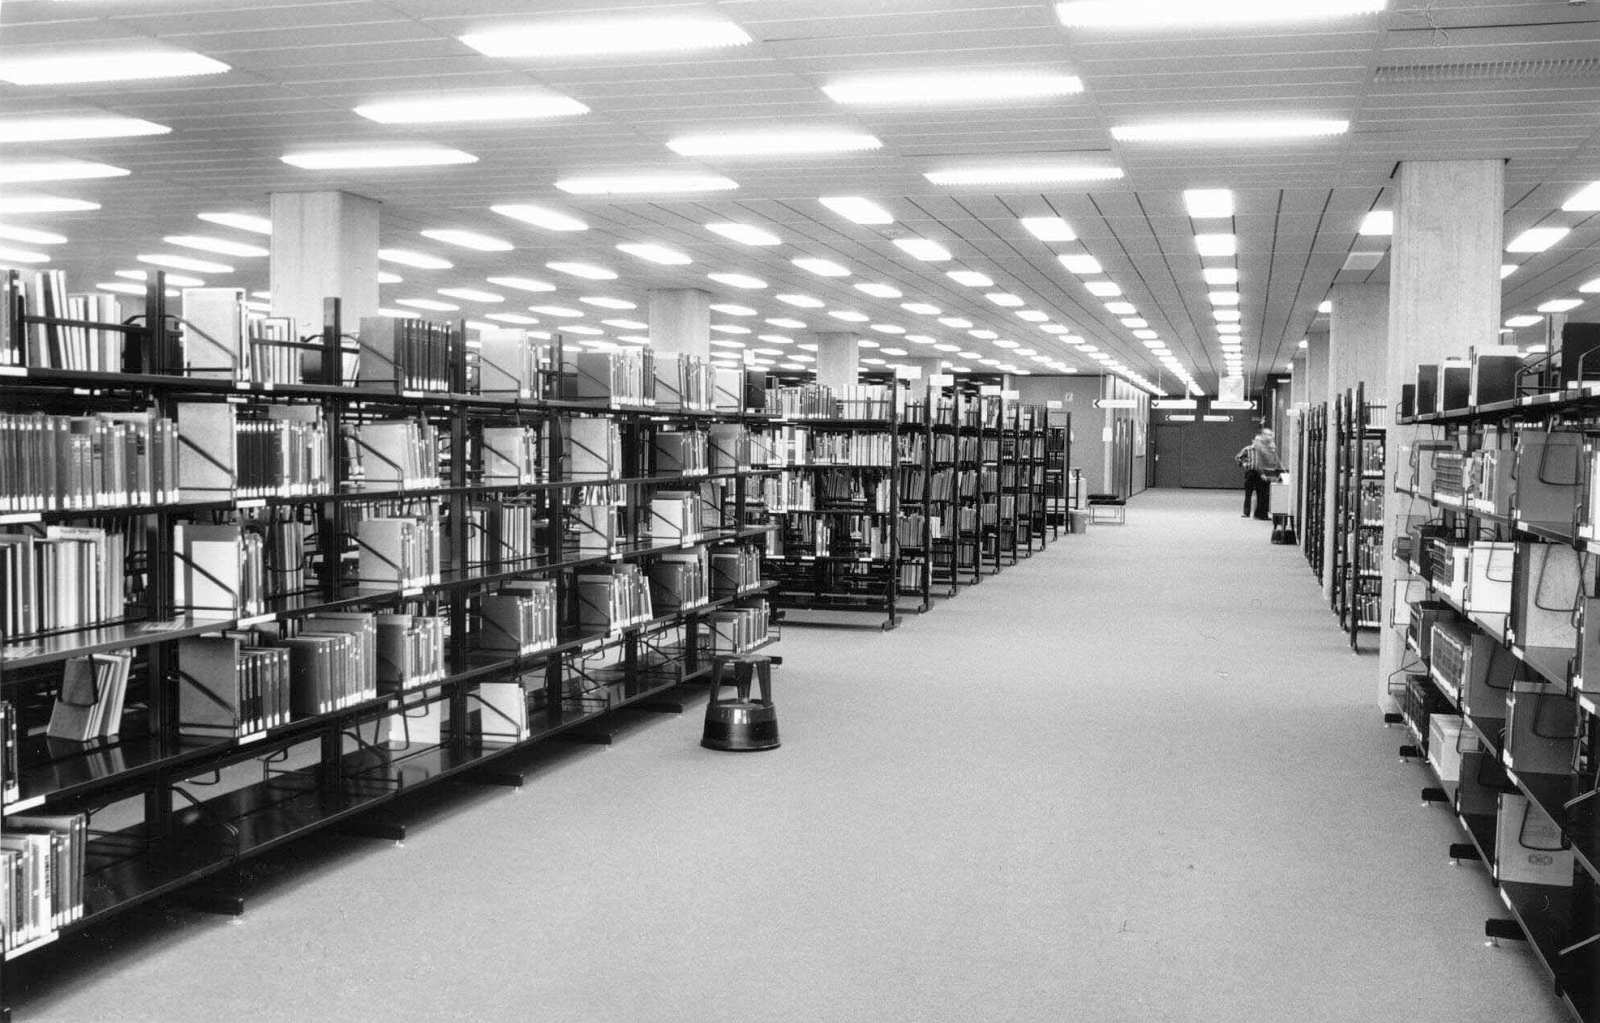 Ein hell erleuchteter Raum mit einem breiten Gang an dem rechts und links mit Büchern gefüllte Regale stehen und weitere Gänge abgehen. Am Ende des breiten Ganges stehen zwei Männer an einer Informationstheke.